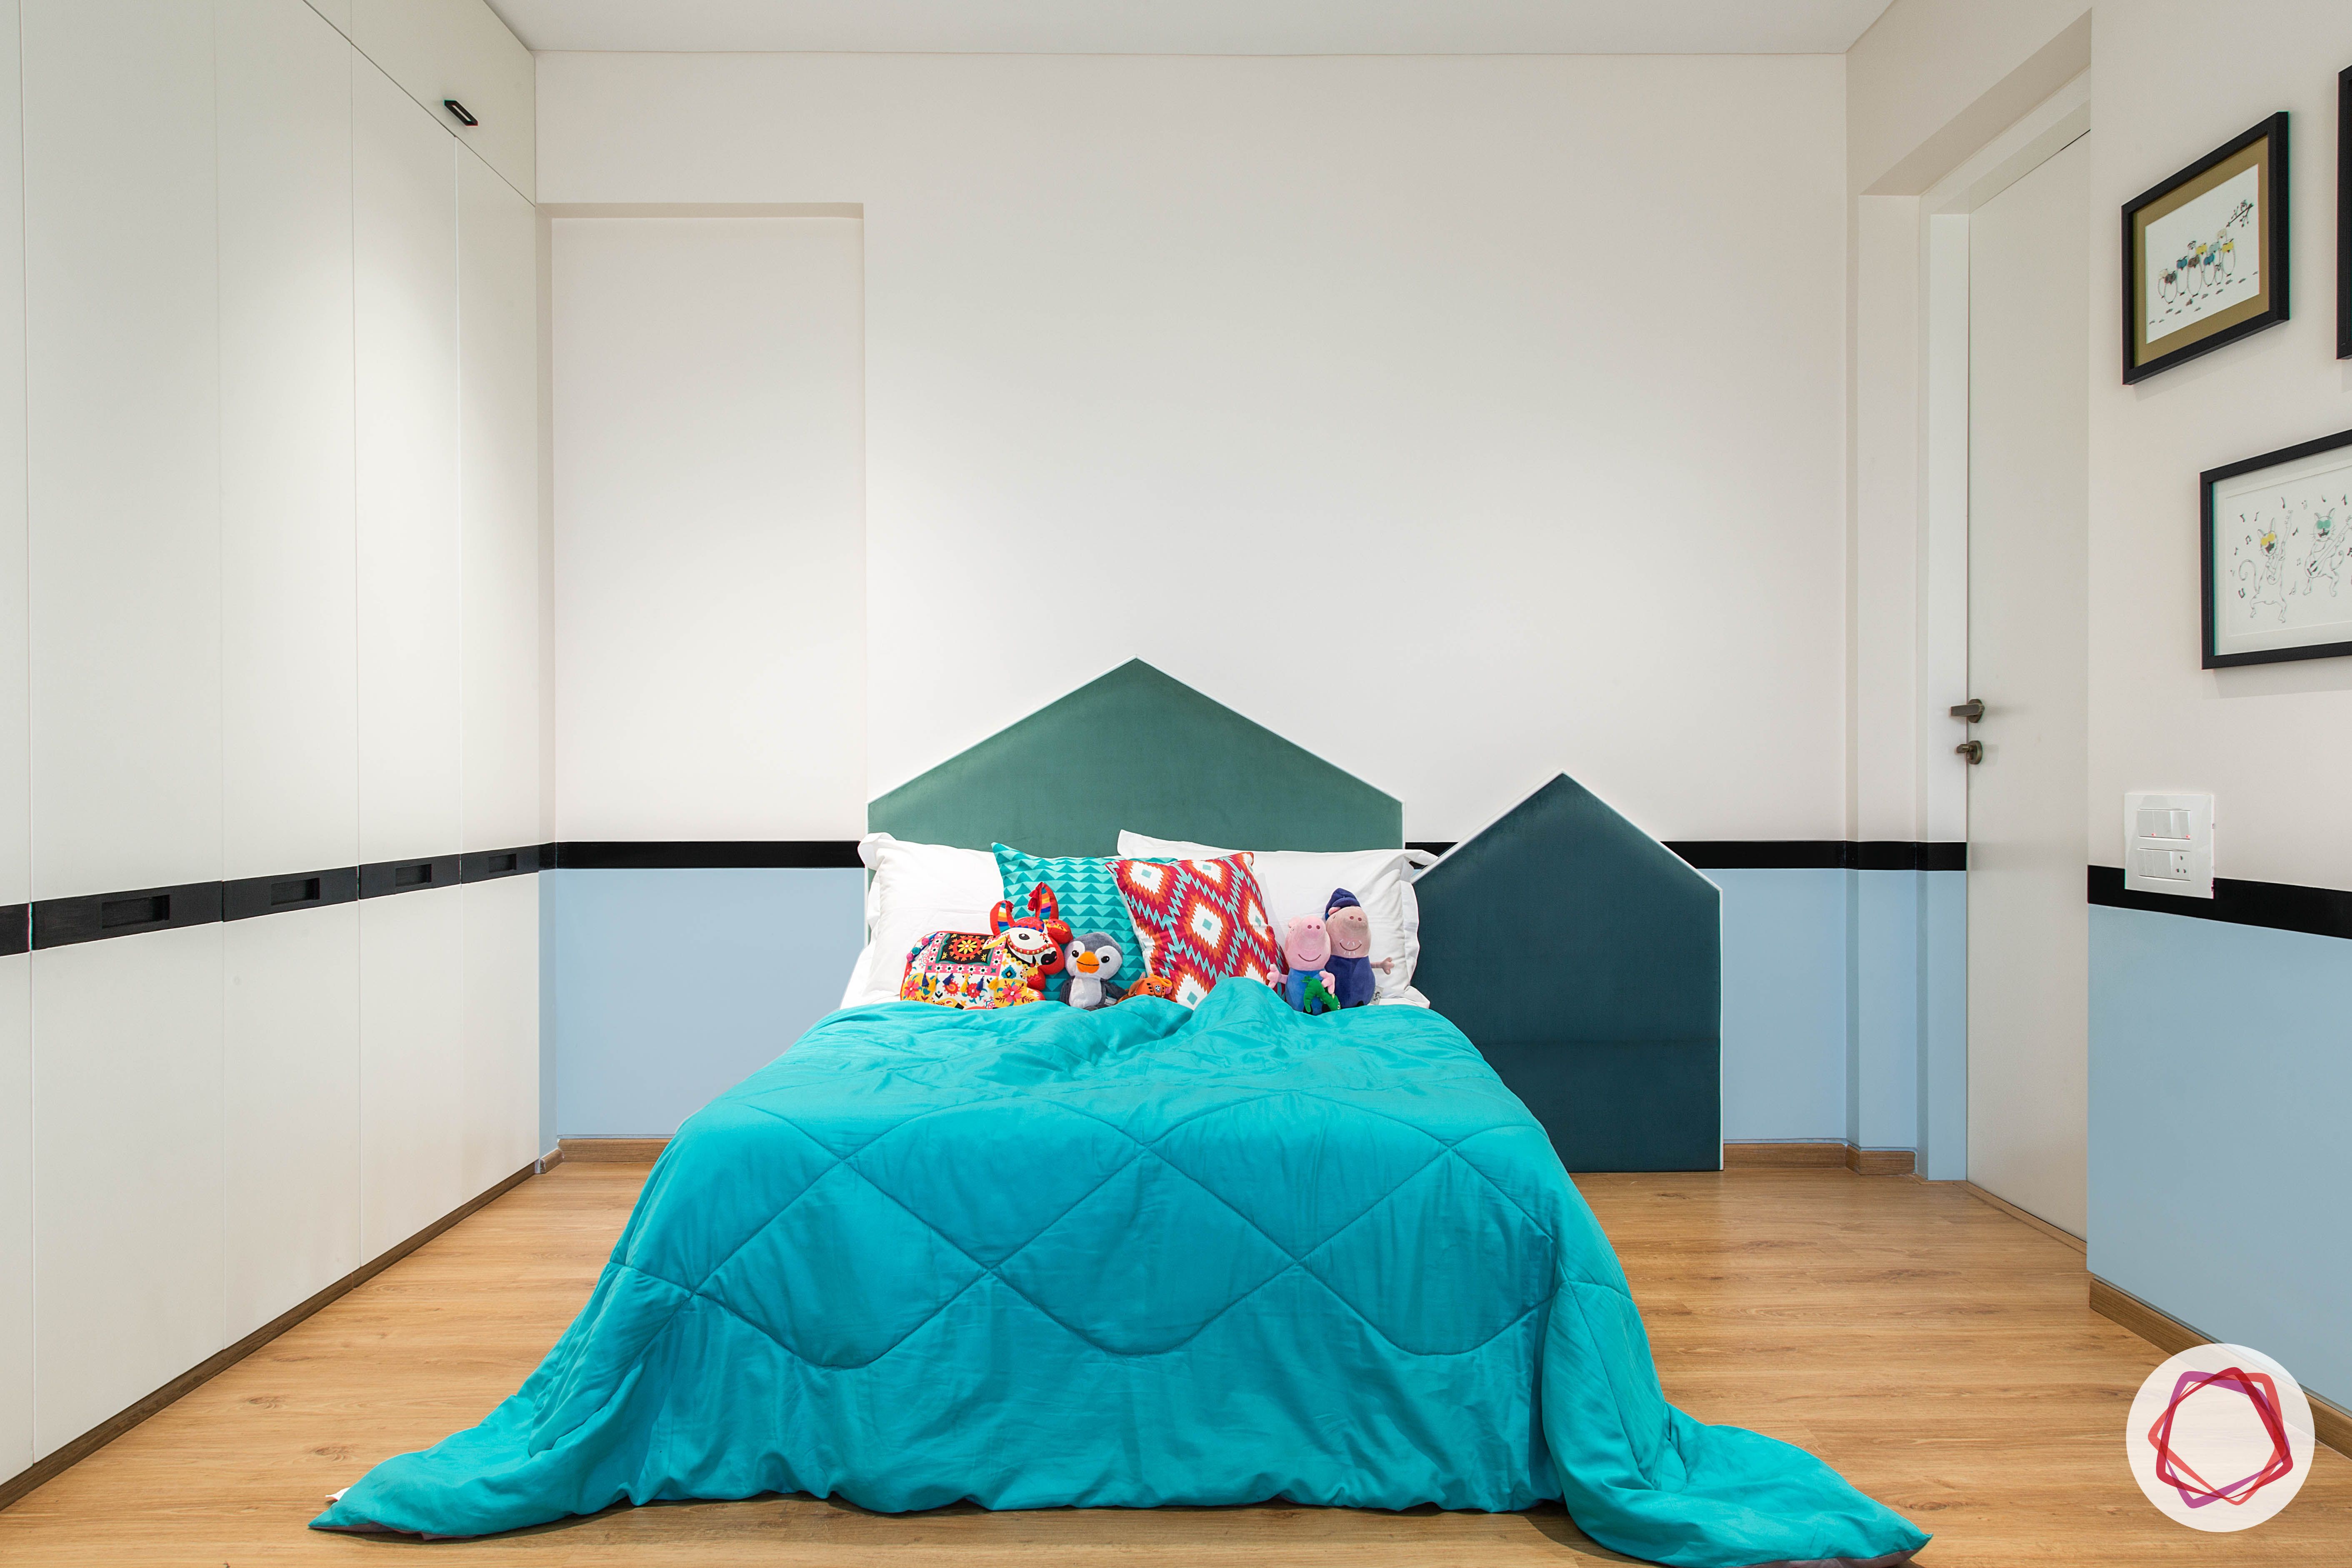 condo-interior design-kids-room-blue-headboard-wooden-flooring